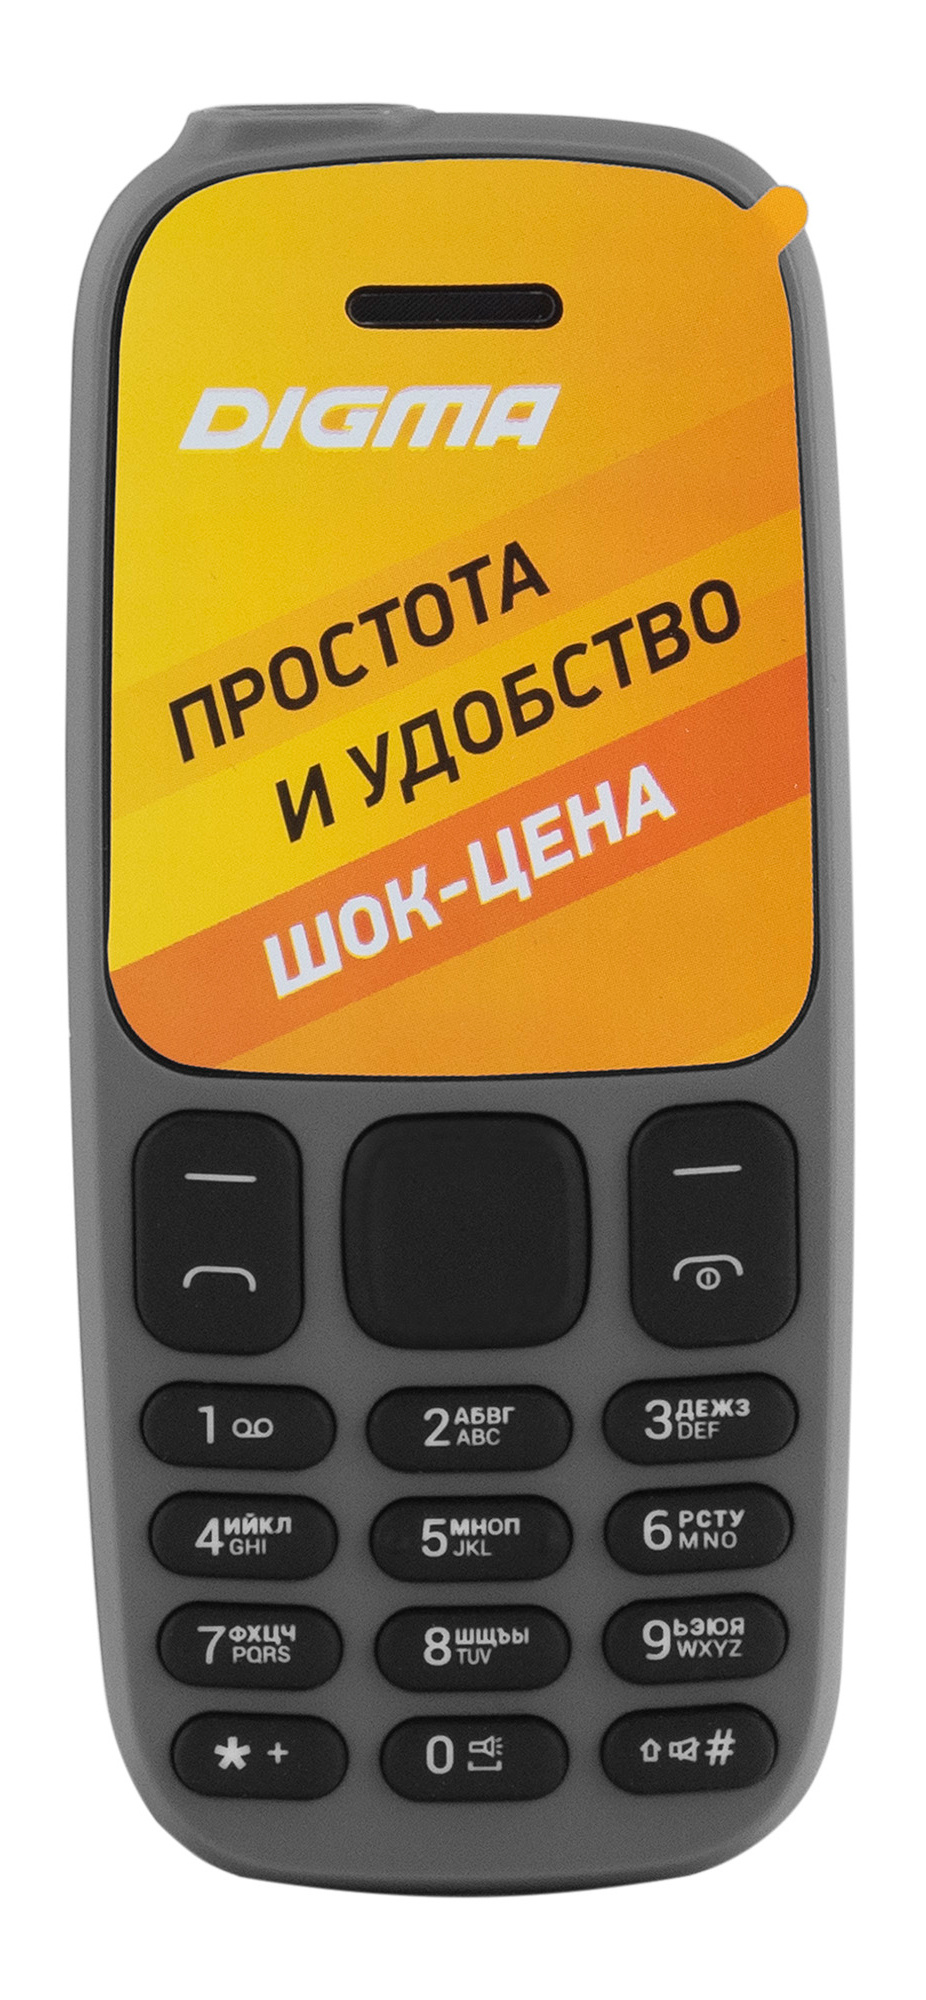 Мобильный телефон Digma A106 Linx 32Mb серый моноблок 2Sim 1.44" 68x98 GSM900/1800